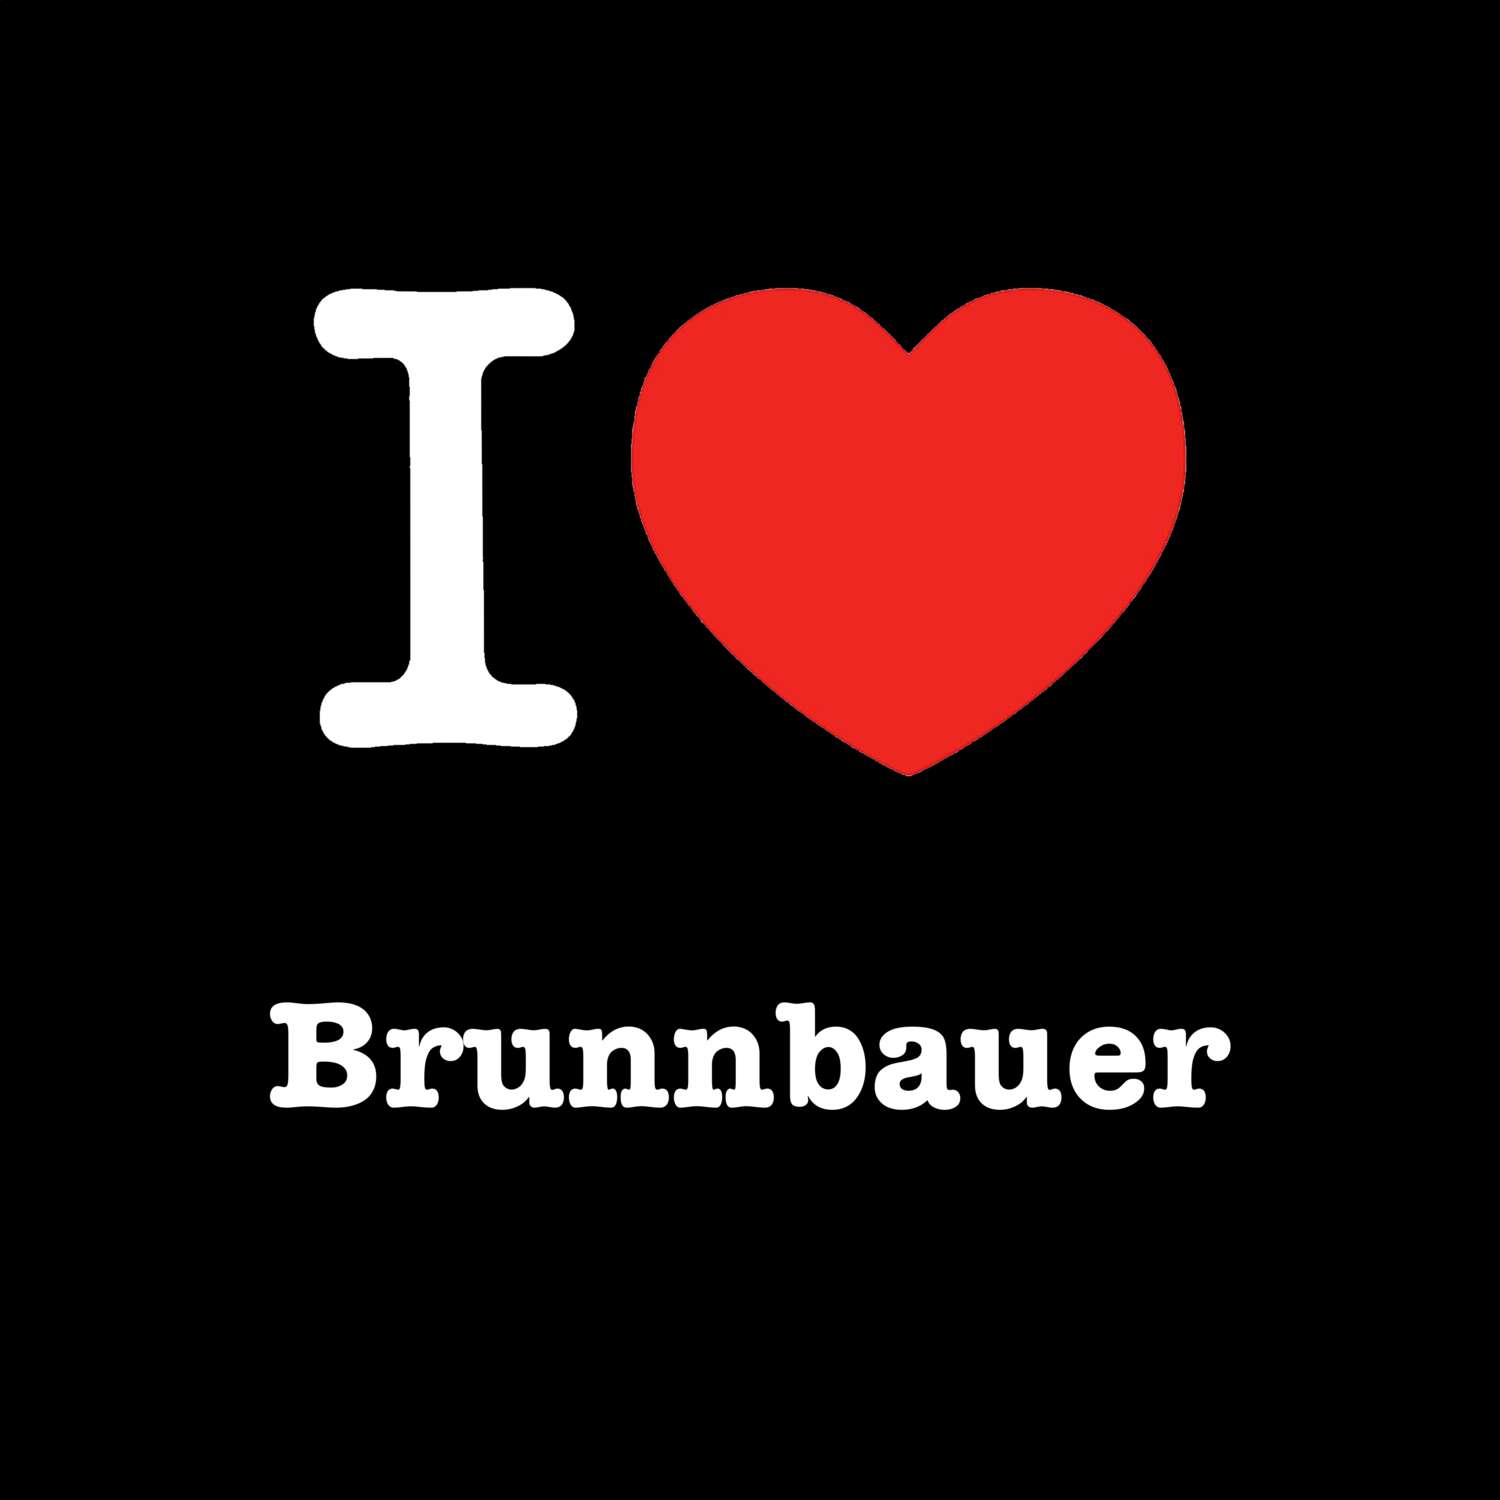 Brunnbauer T-Shirt »I love«